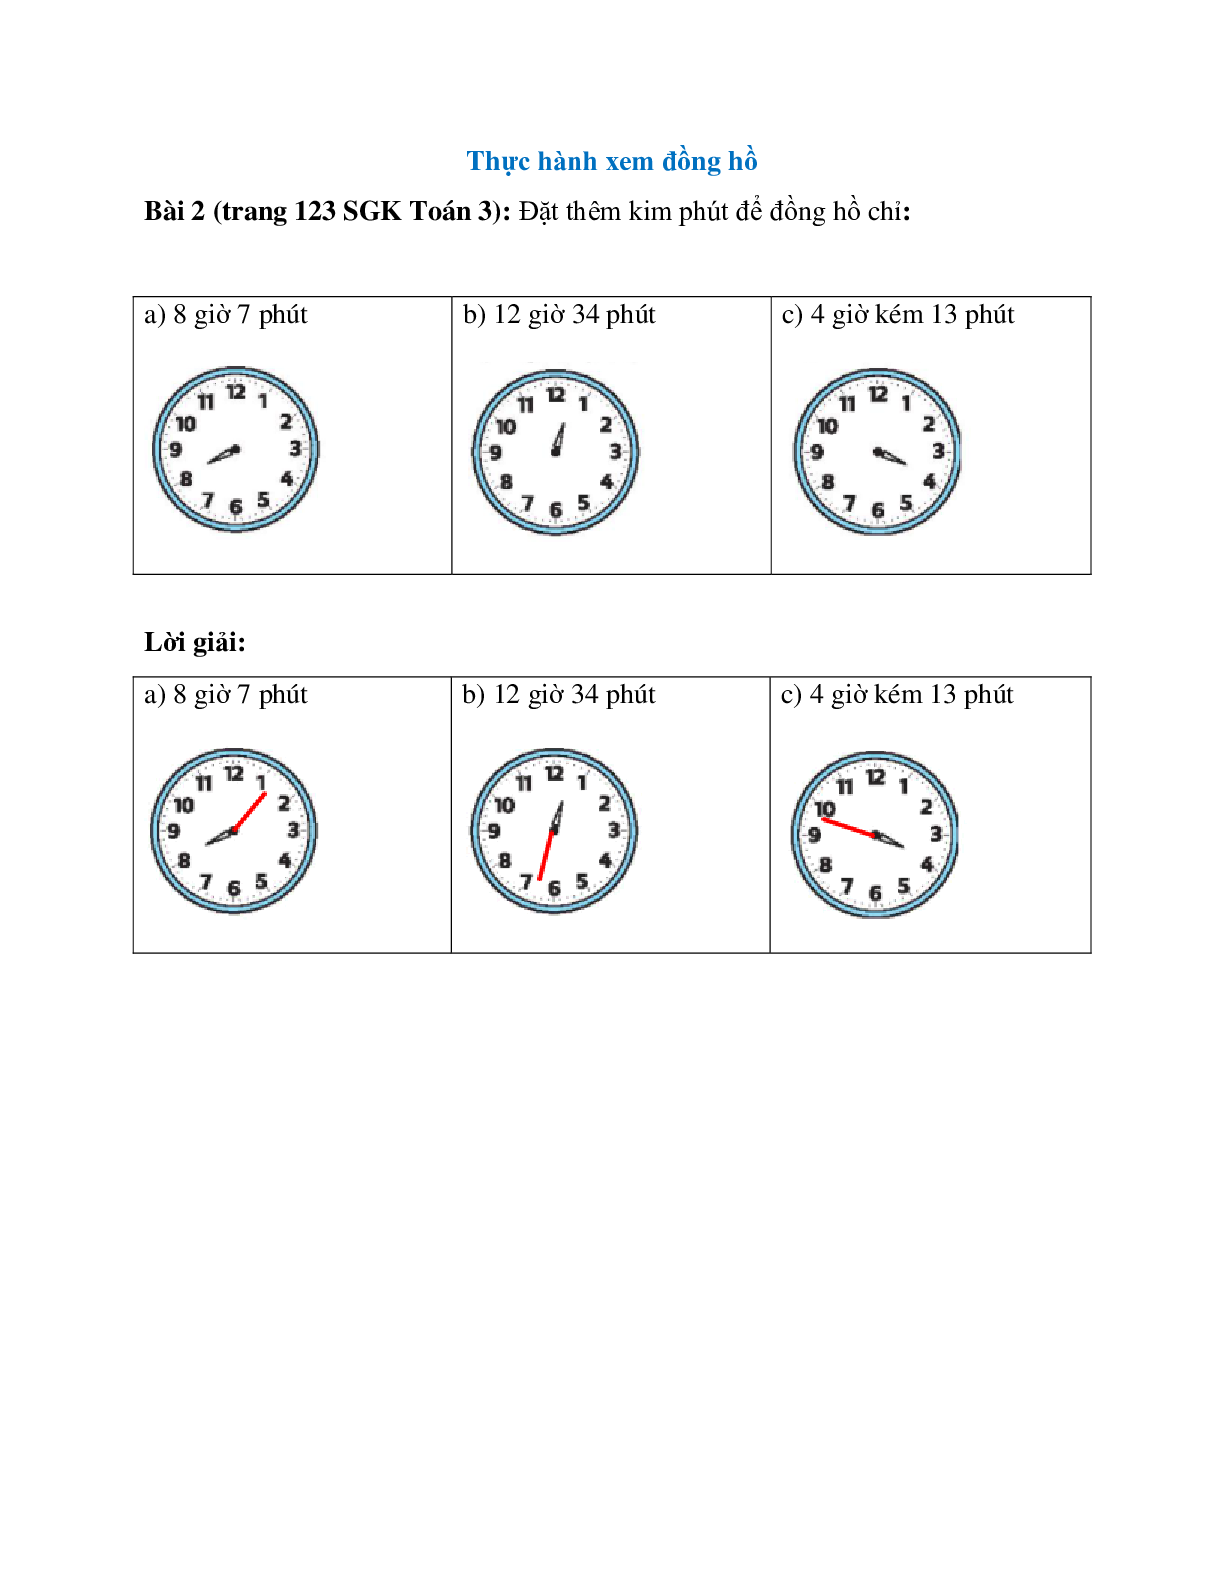 Đặt thêm kim phút để đồng hồ chỉ: 8 giờ 7 phút (trang 1)